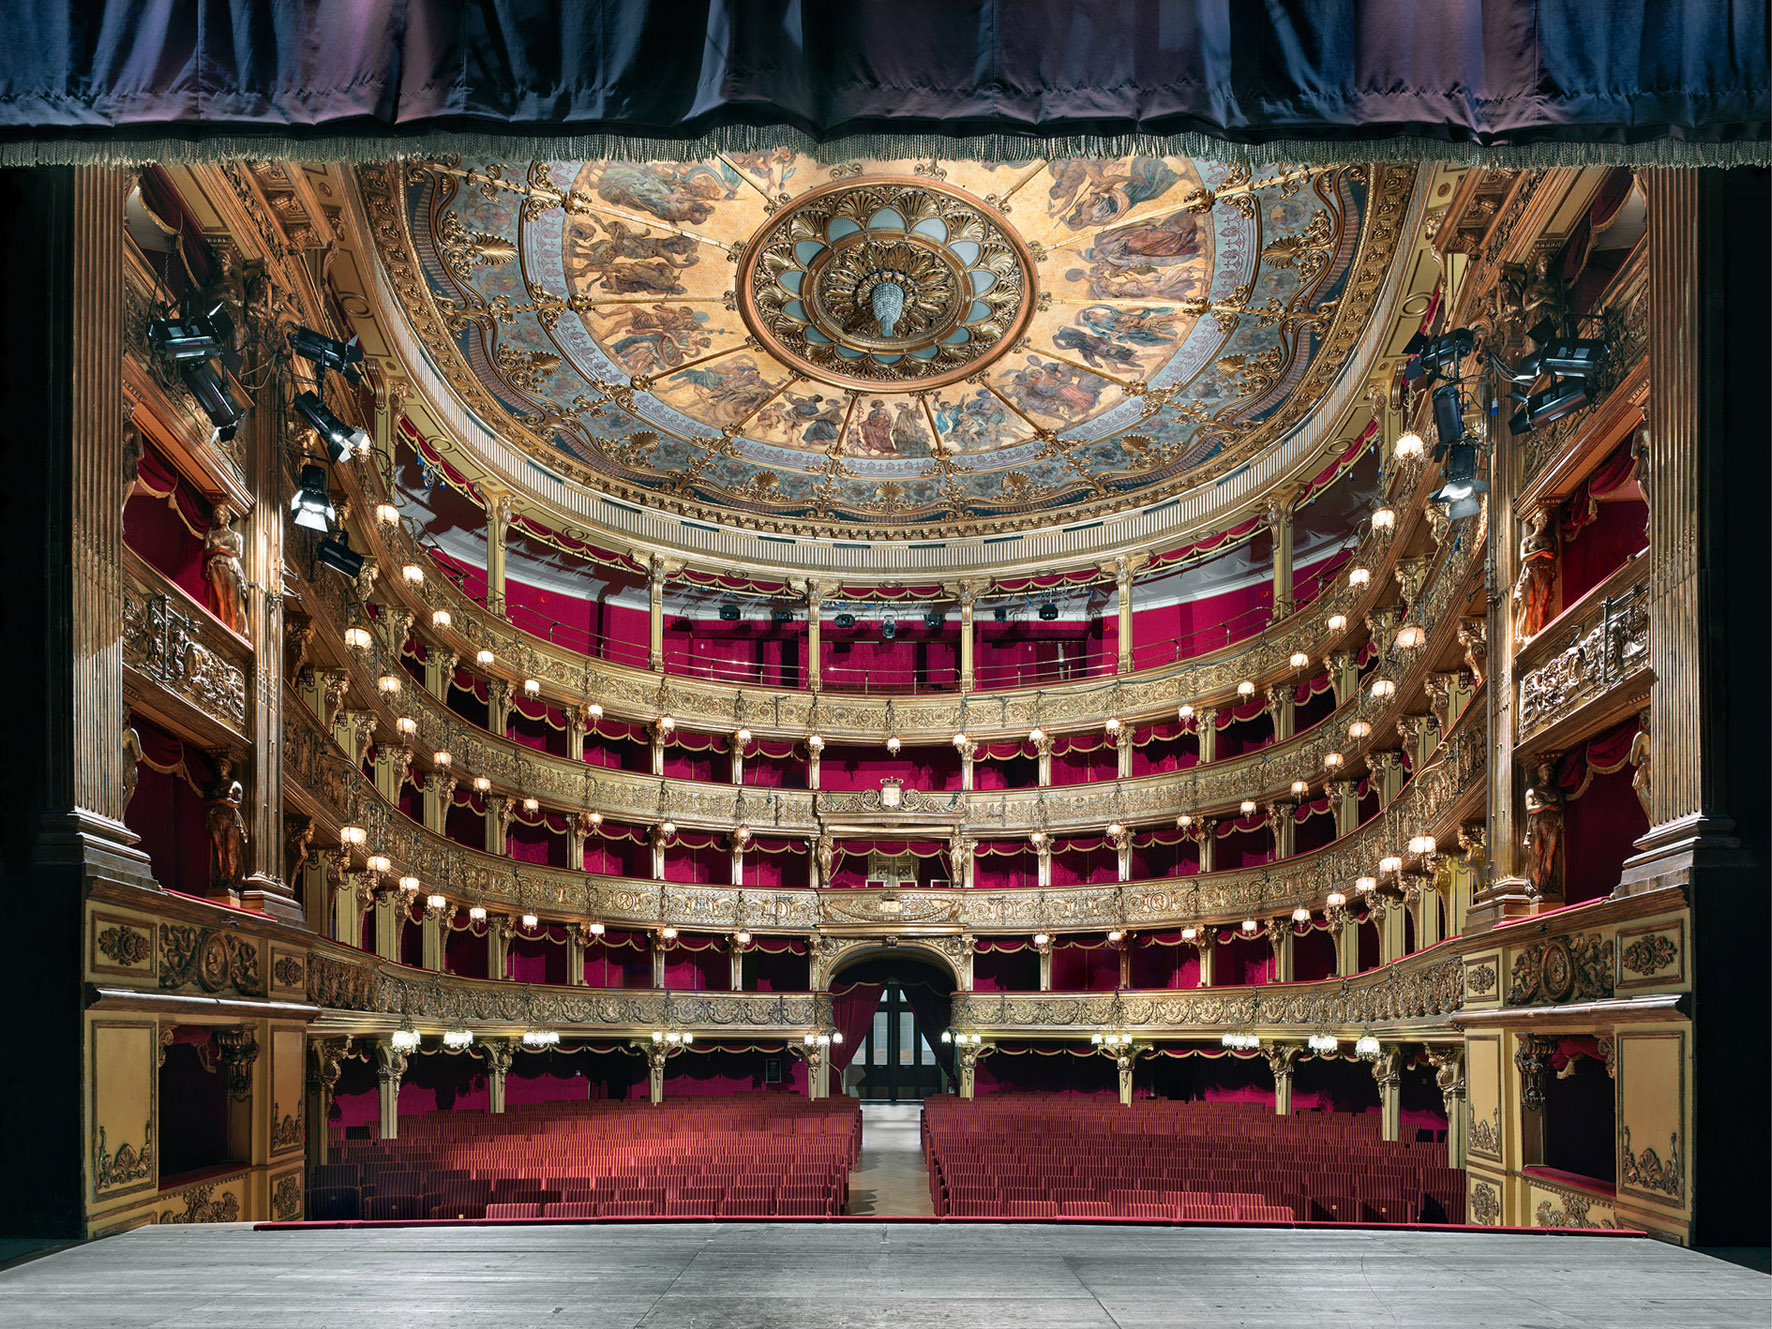 Il Teatro Carignano @ Piazza Carignano